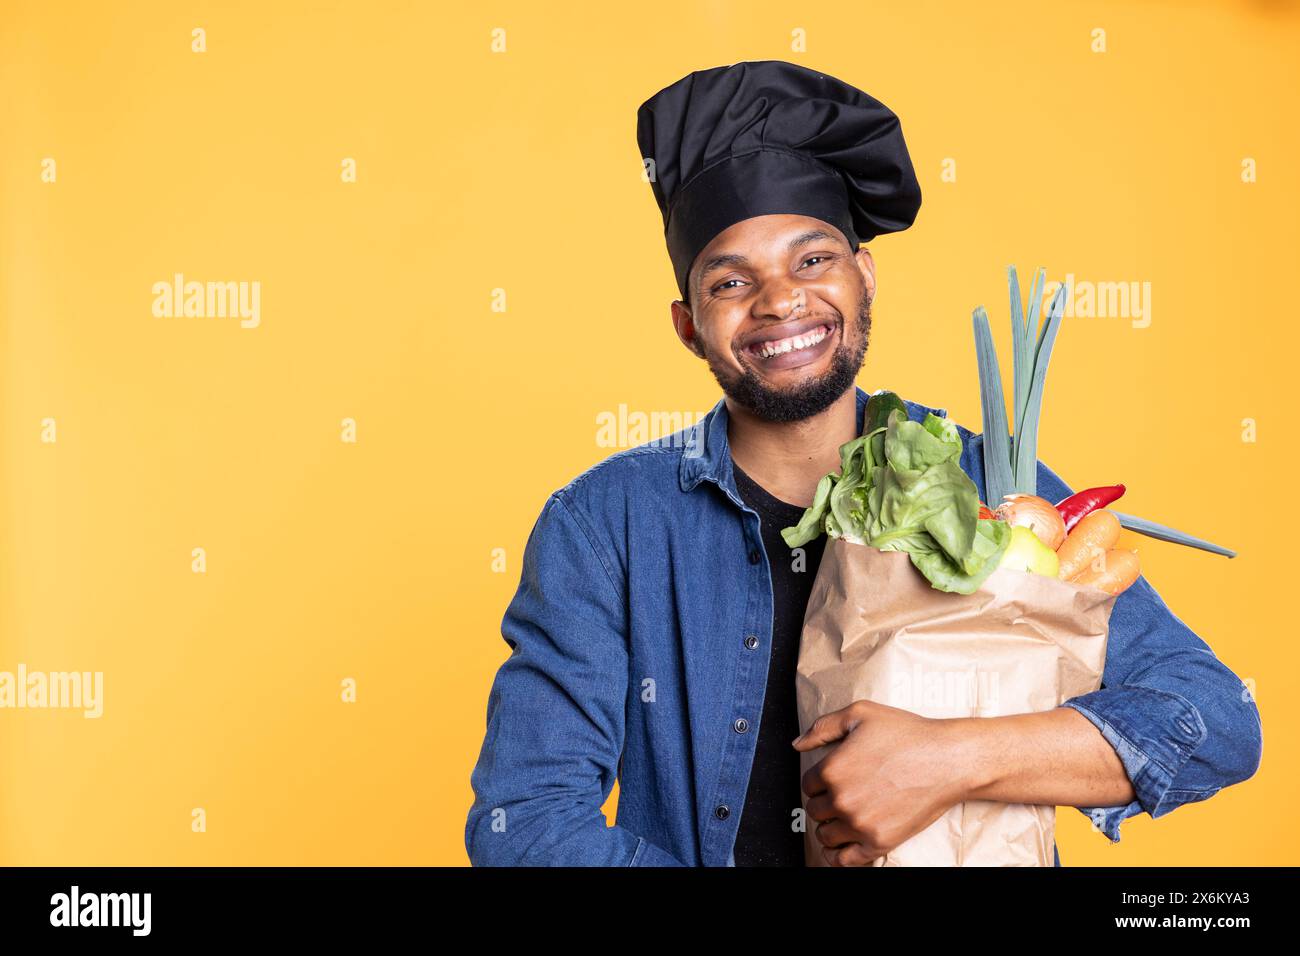 Chef afroamericano maschile che acquista alimentari freschi per preparare una speciale ricetta vegana, sentendosi entusiasta dello stile di vita sostenibile e di mangiare sano con cibo di origine etica. Zero sprechi. Foto Stock